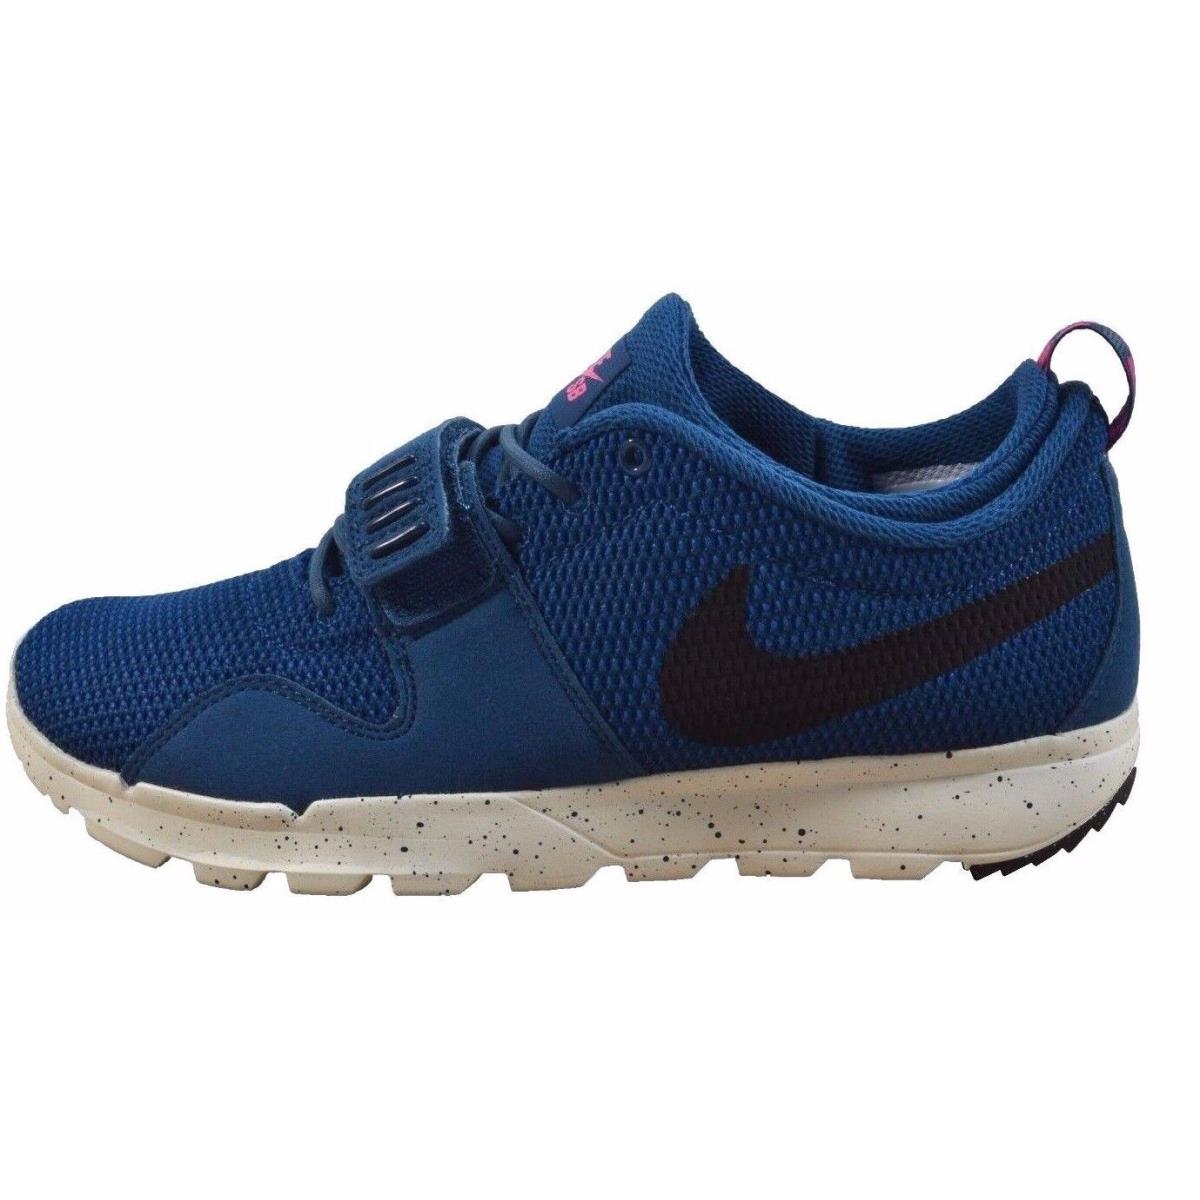 Nike Trainerendor Blue Force Black Sail Pink Pow 616575-416 491 Men`s Shoes